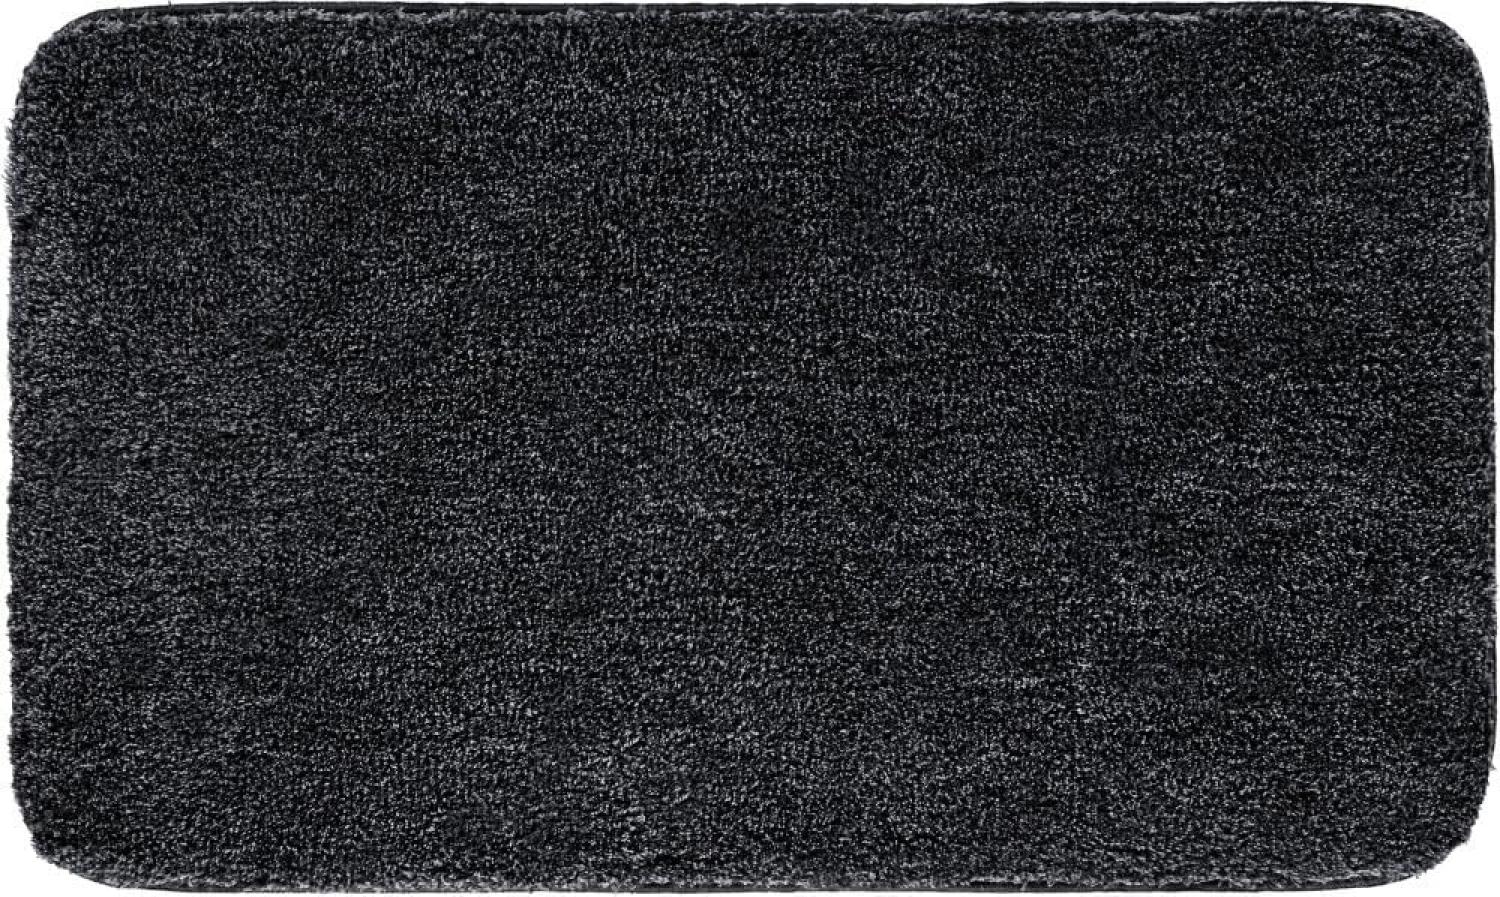 Grund Melange Badteppich, Acryl, Anthrazit, 60 x 100 cm Bild 1